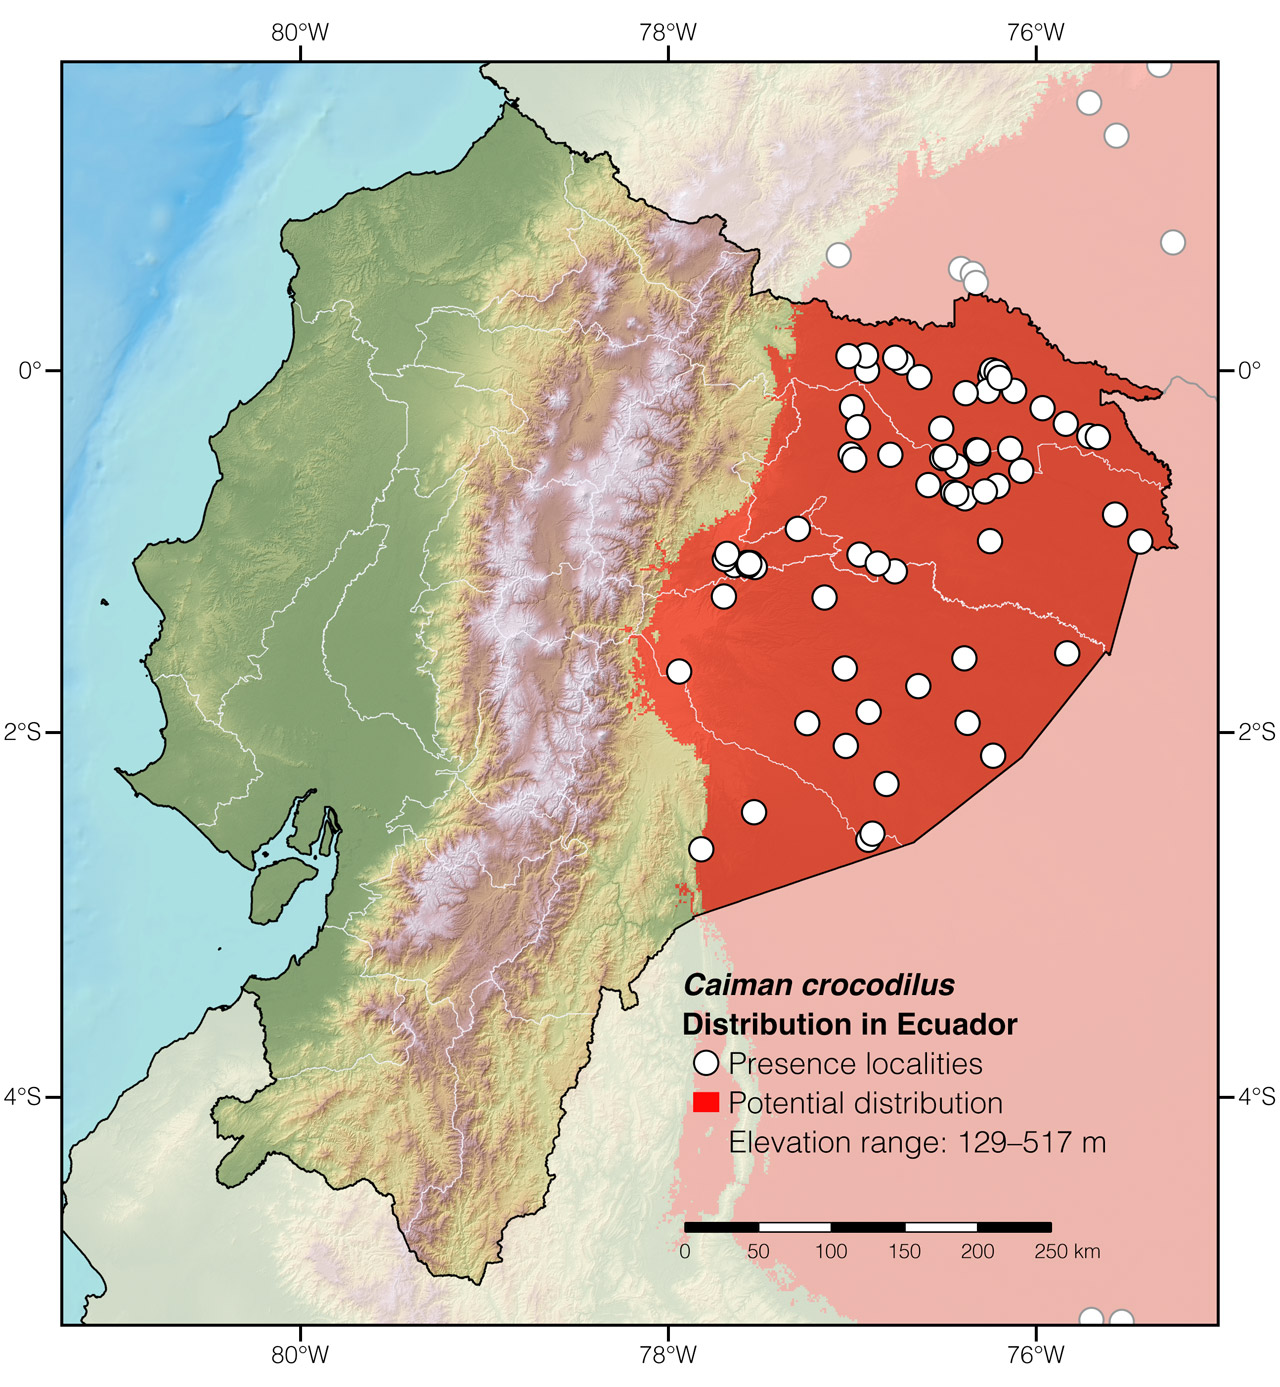 Distribution of Caiman crocodilus in Ecuador